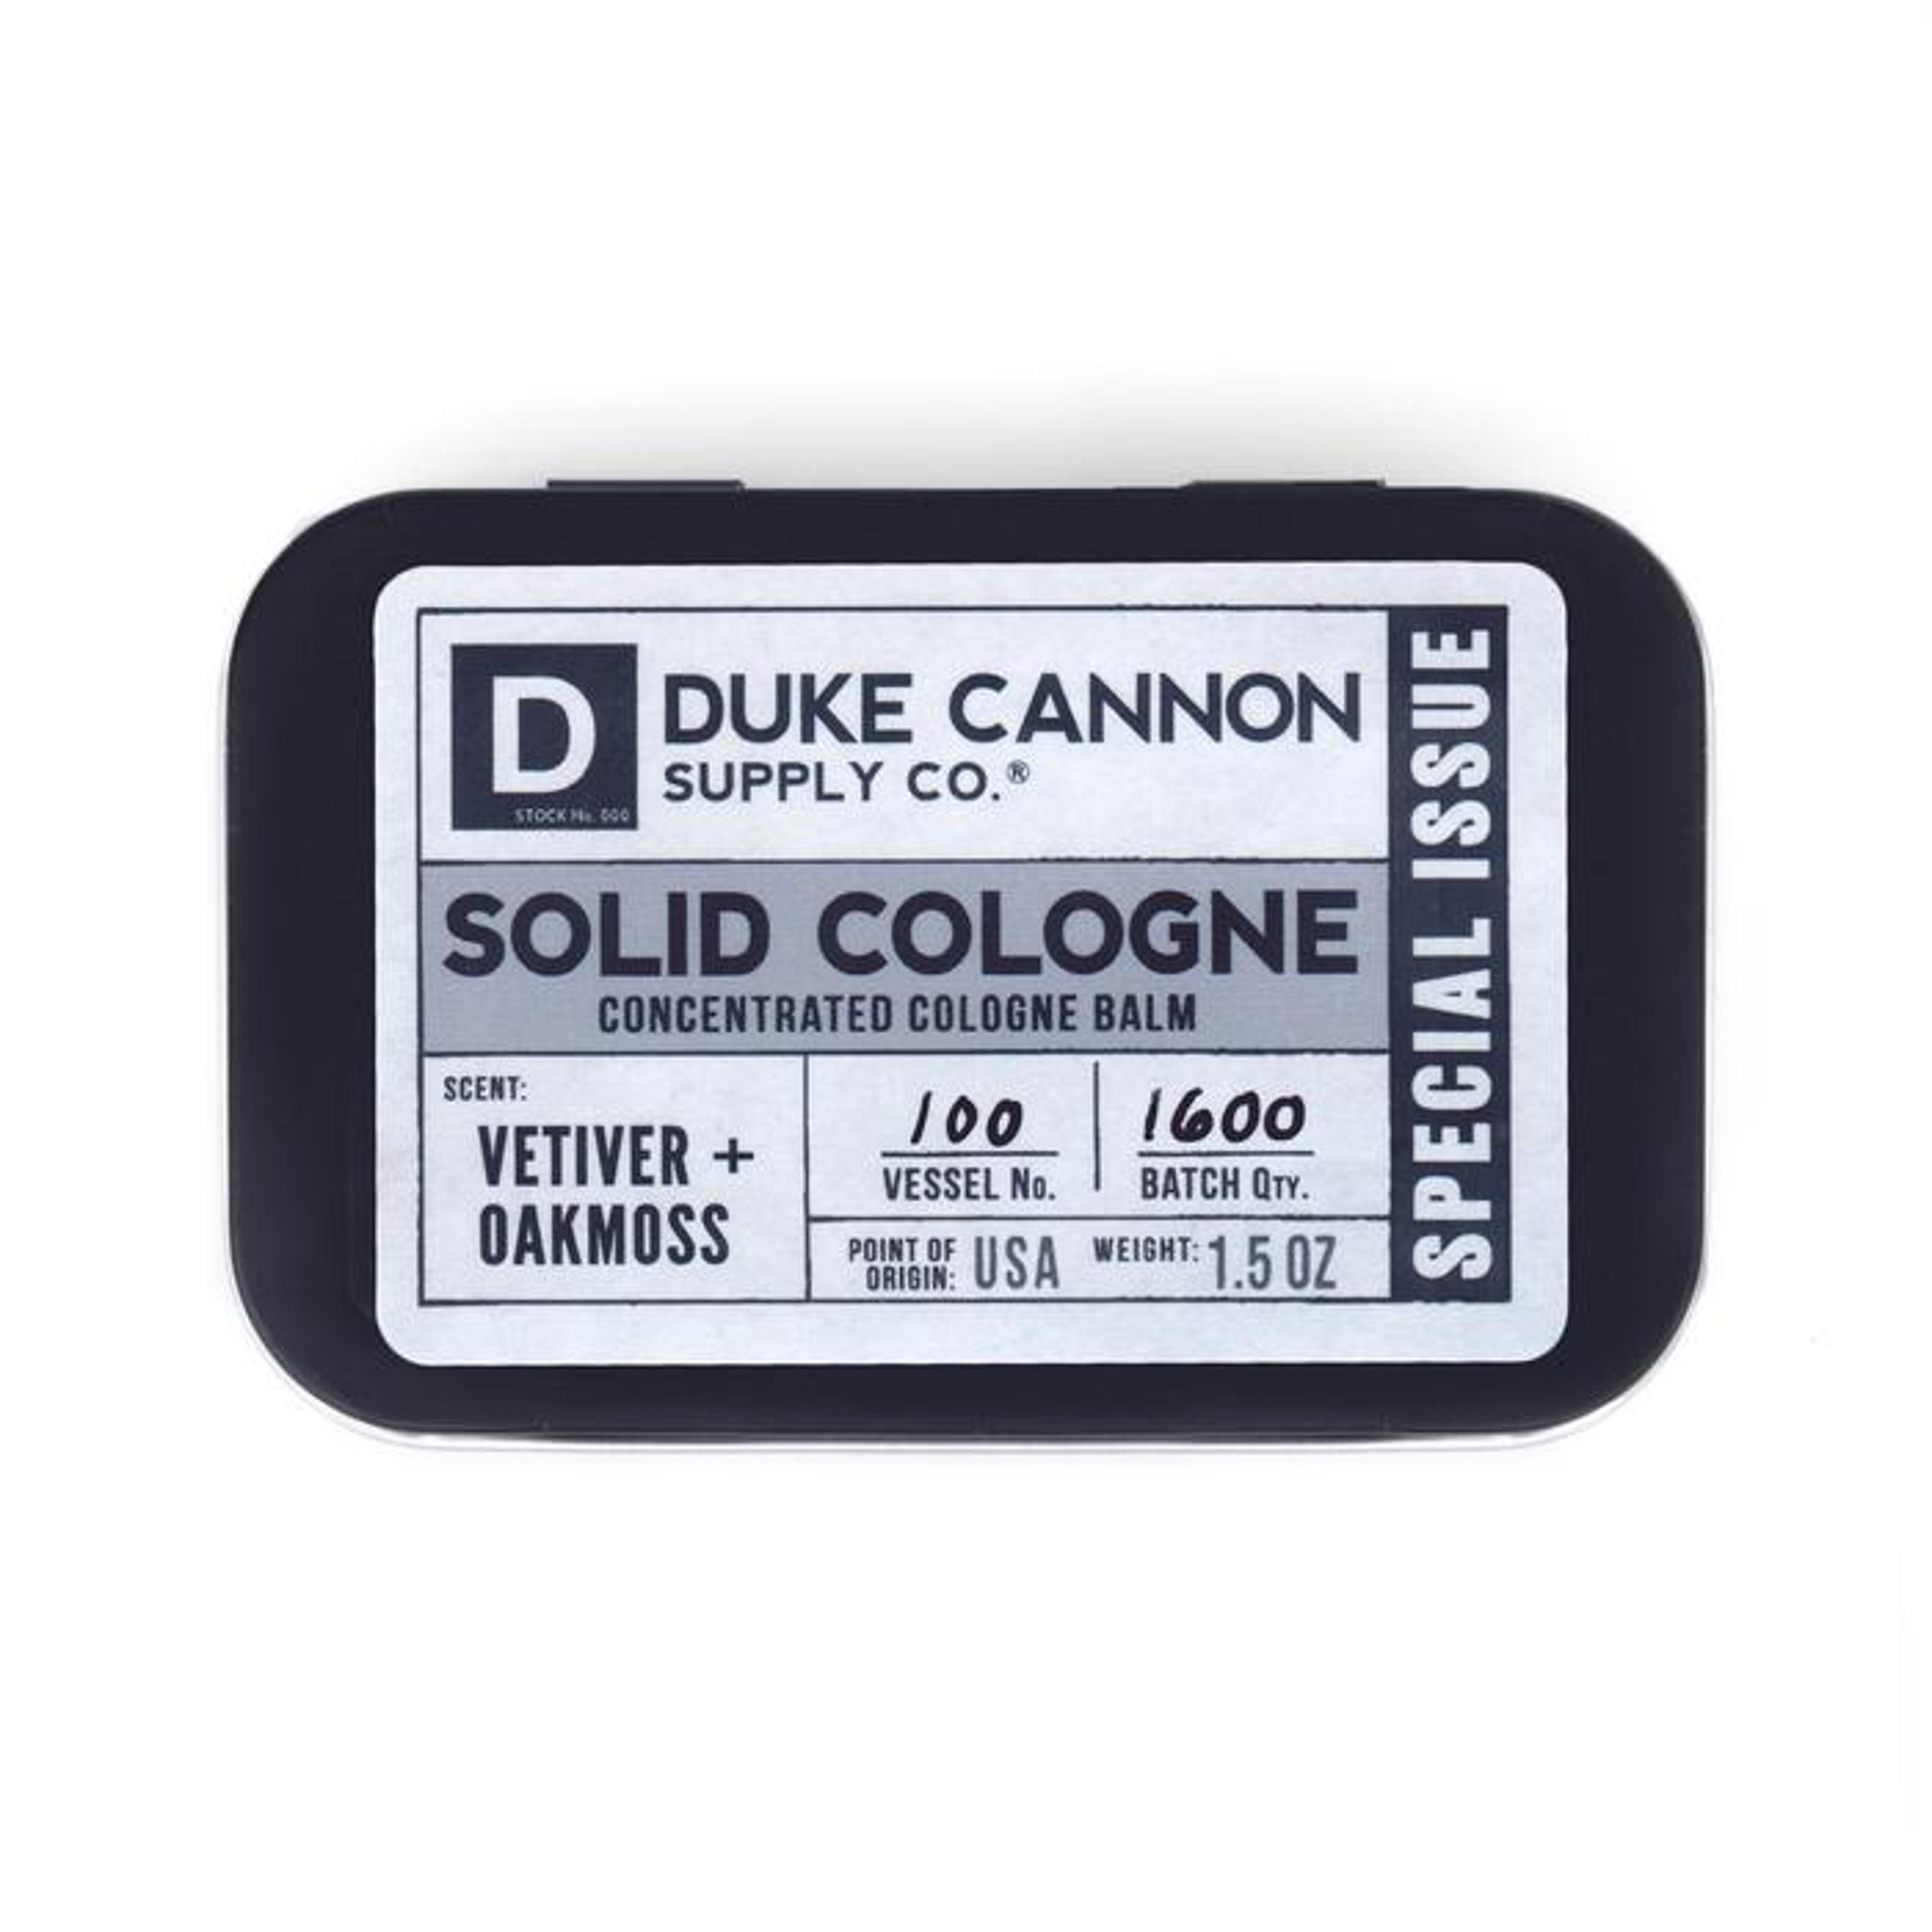  Duke Cannon Solid Cologne